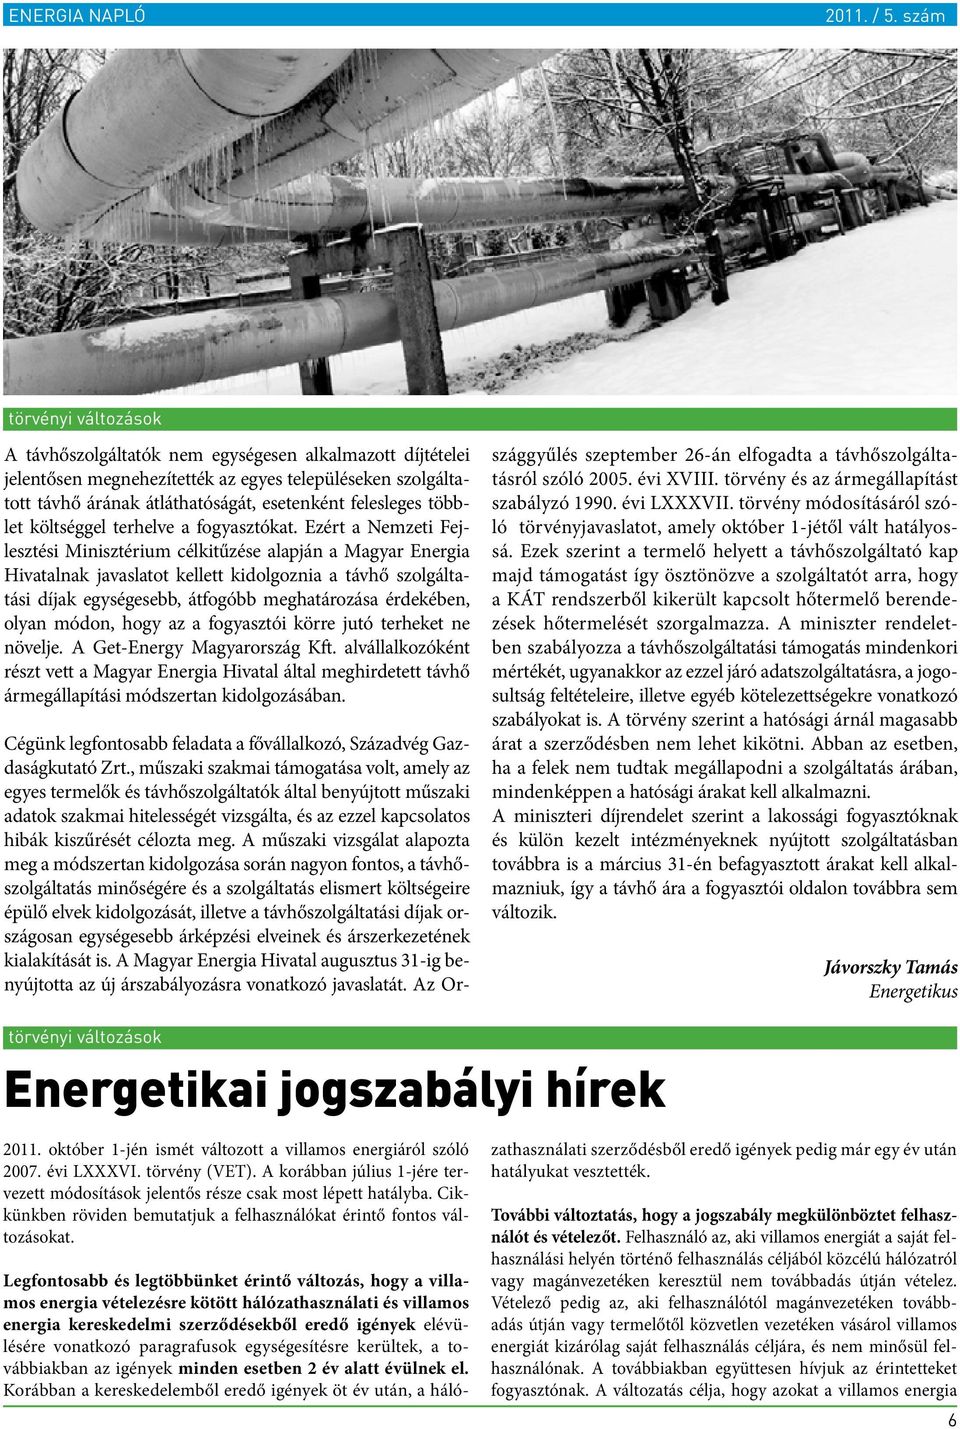 Ezért a Nemzeti Fejlesztési Minisztérium célkitűzése alapján a Magyar Energia Hivatalnak javaslatot kellett kidolgoznia a távhő szolgáltatási díjak egységesebb, átfogóbb meghatározása érdekében,